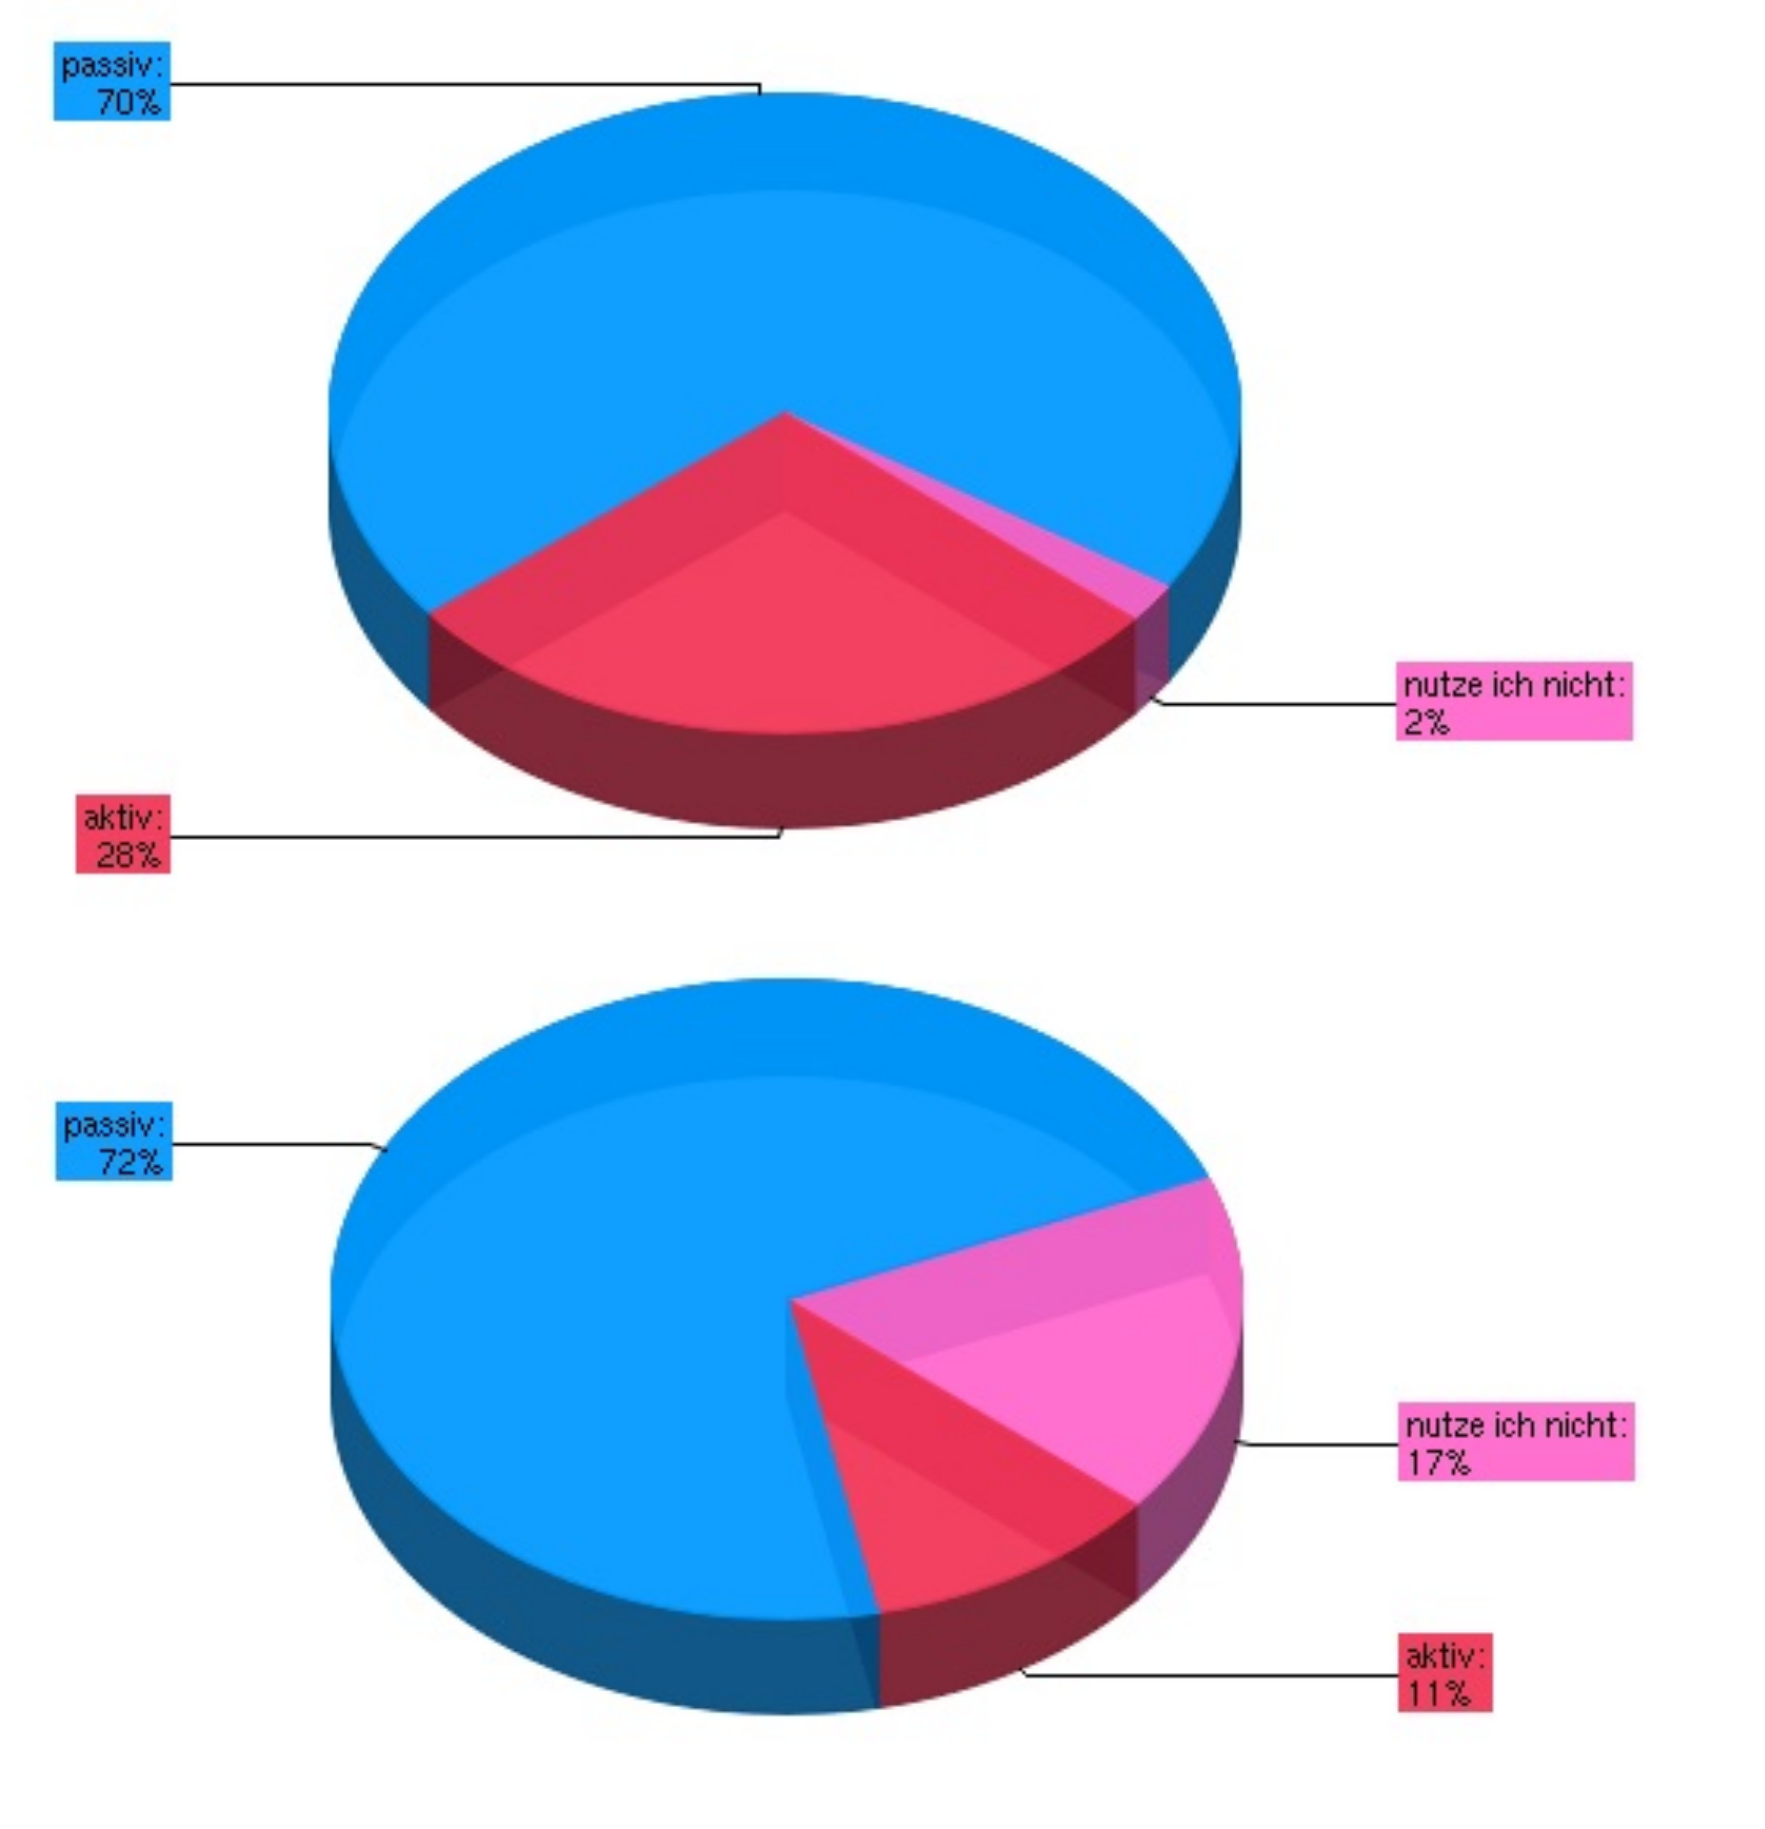 Aus der Umfrage: Anteile der aktiven und passiven Nutzung des Bereiches „Aktuelle Meldungen“ (oben) und „Forschung“ (unten)